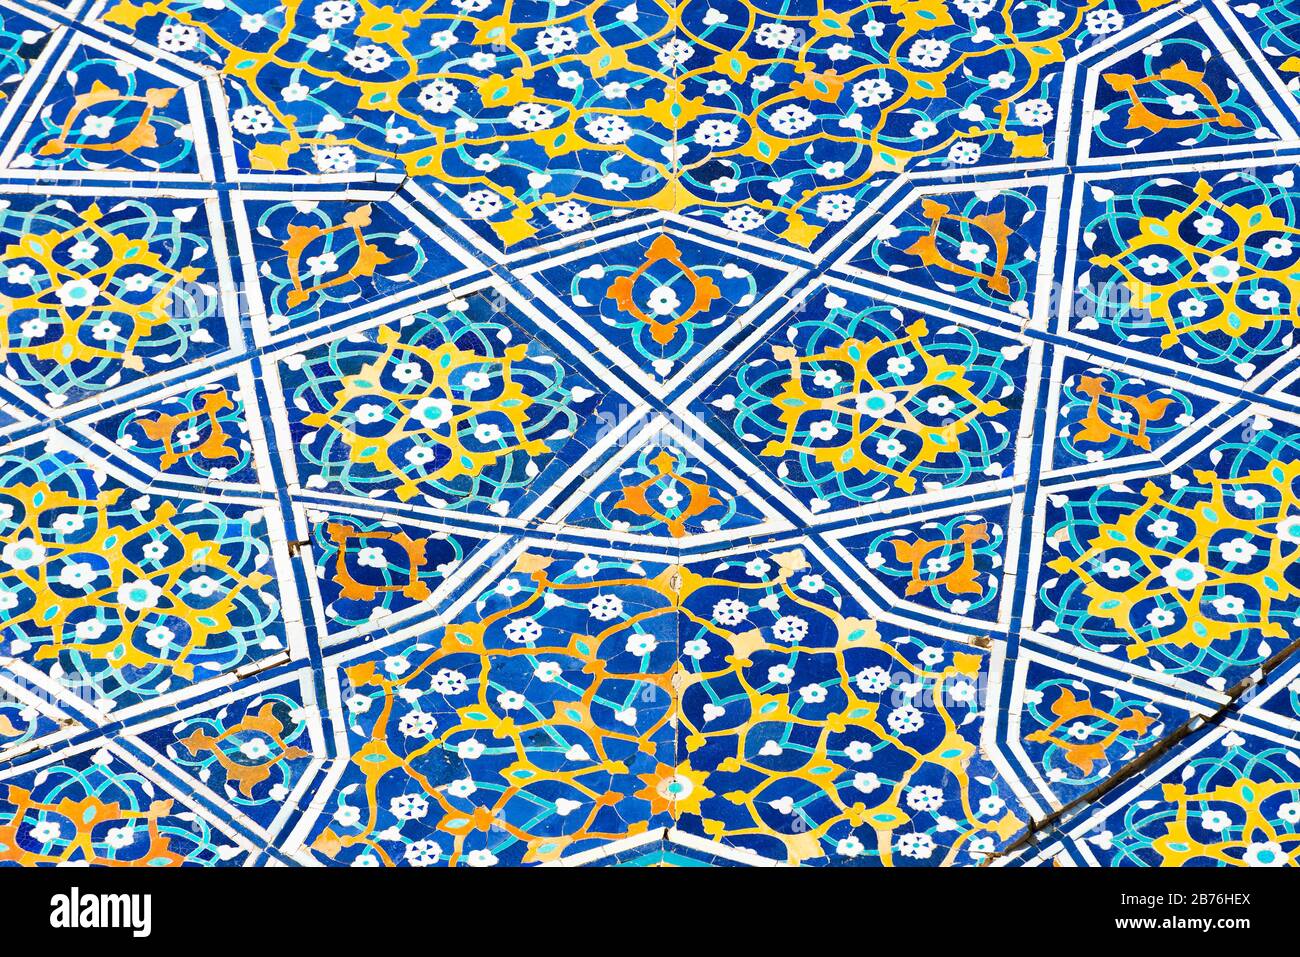 Vue rapprochée montrant les détails colorés, les ornements islamiques et la majolica florale (carreaux de céramique) à Divan-Beghi Khanaka, Boukhara, Ouzbékistan. Banque D'Images